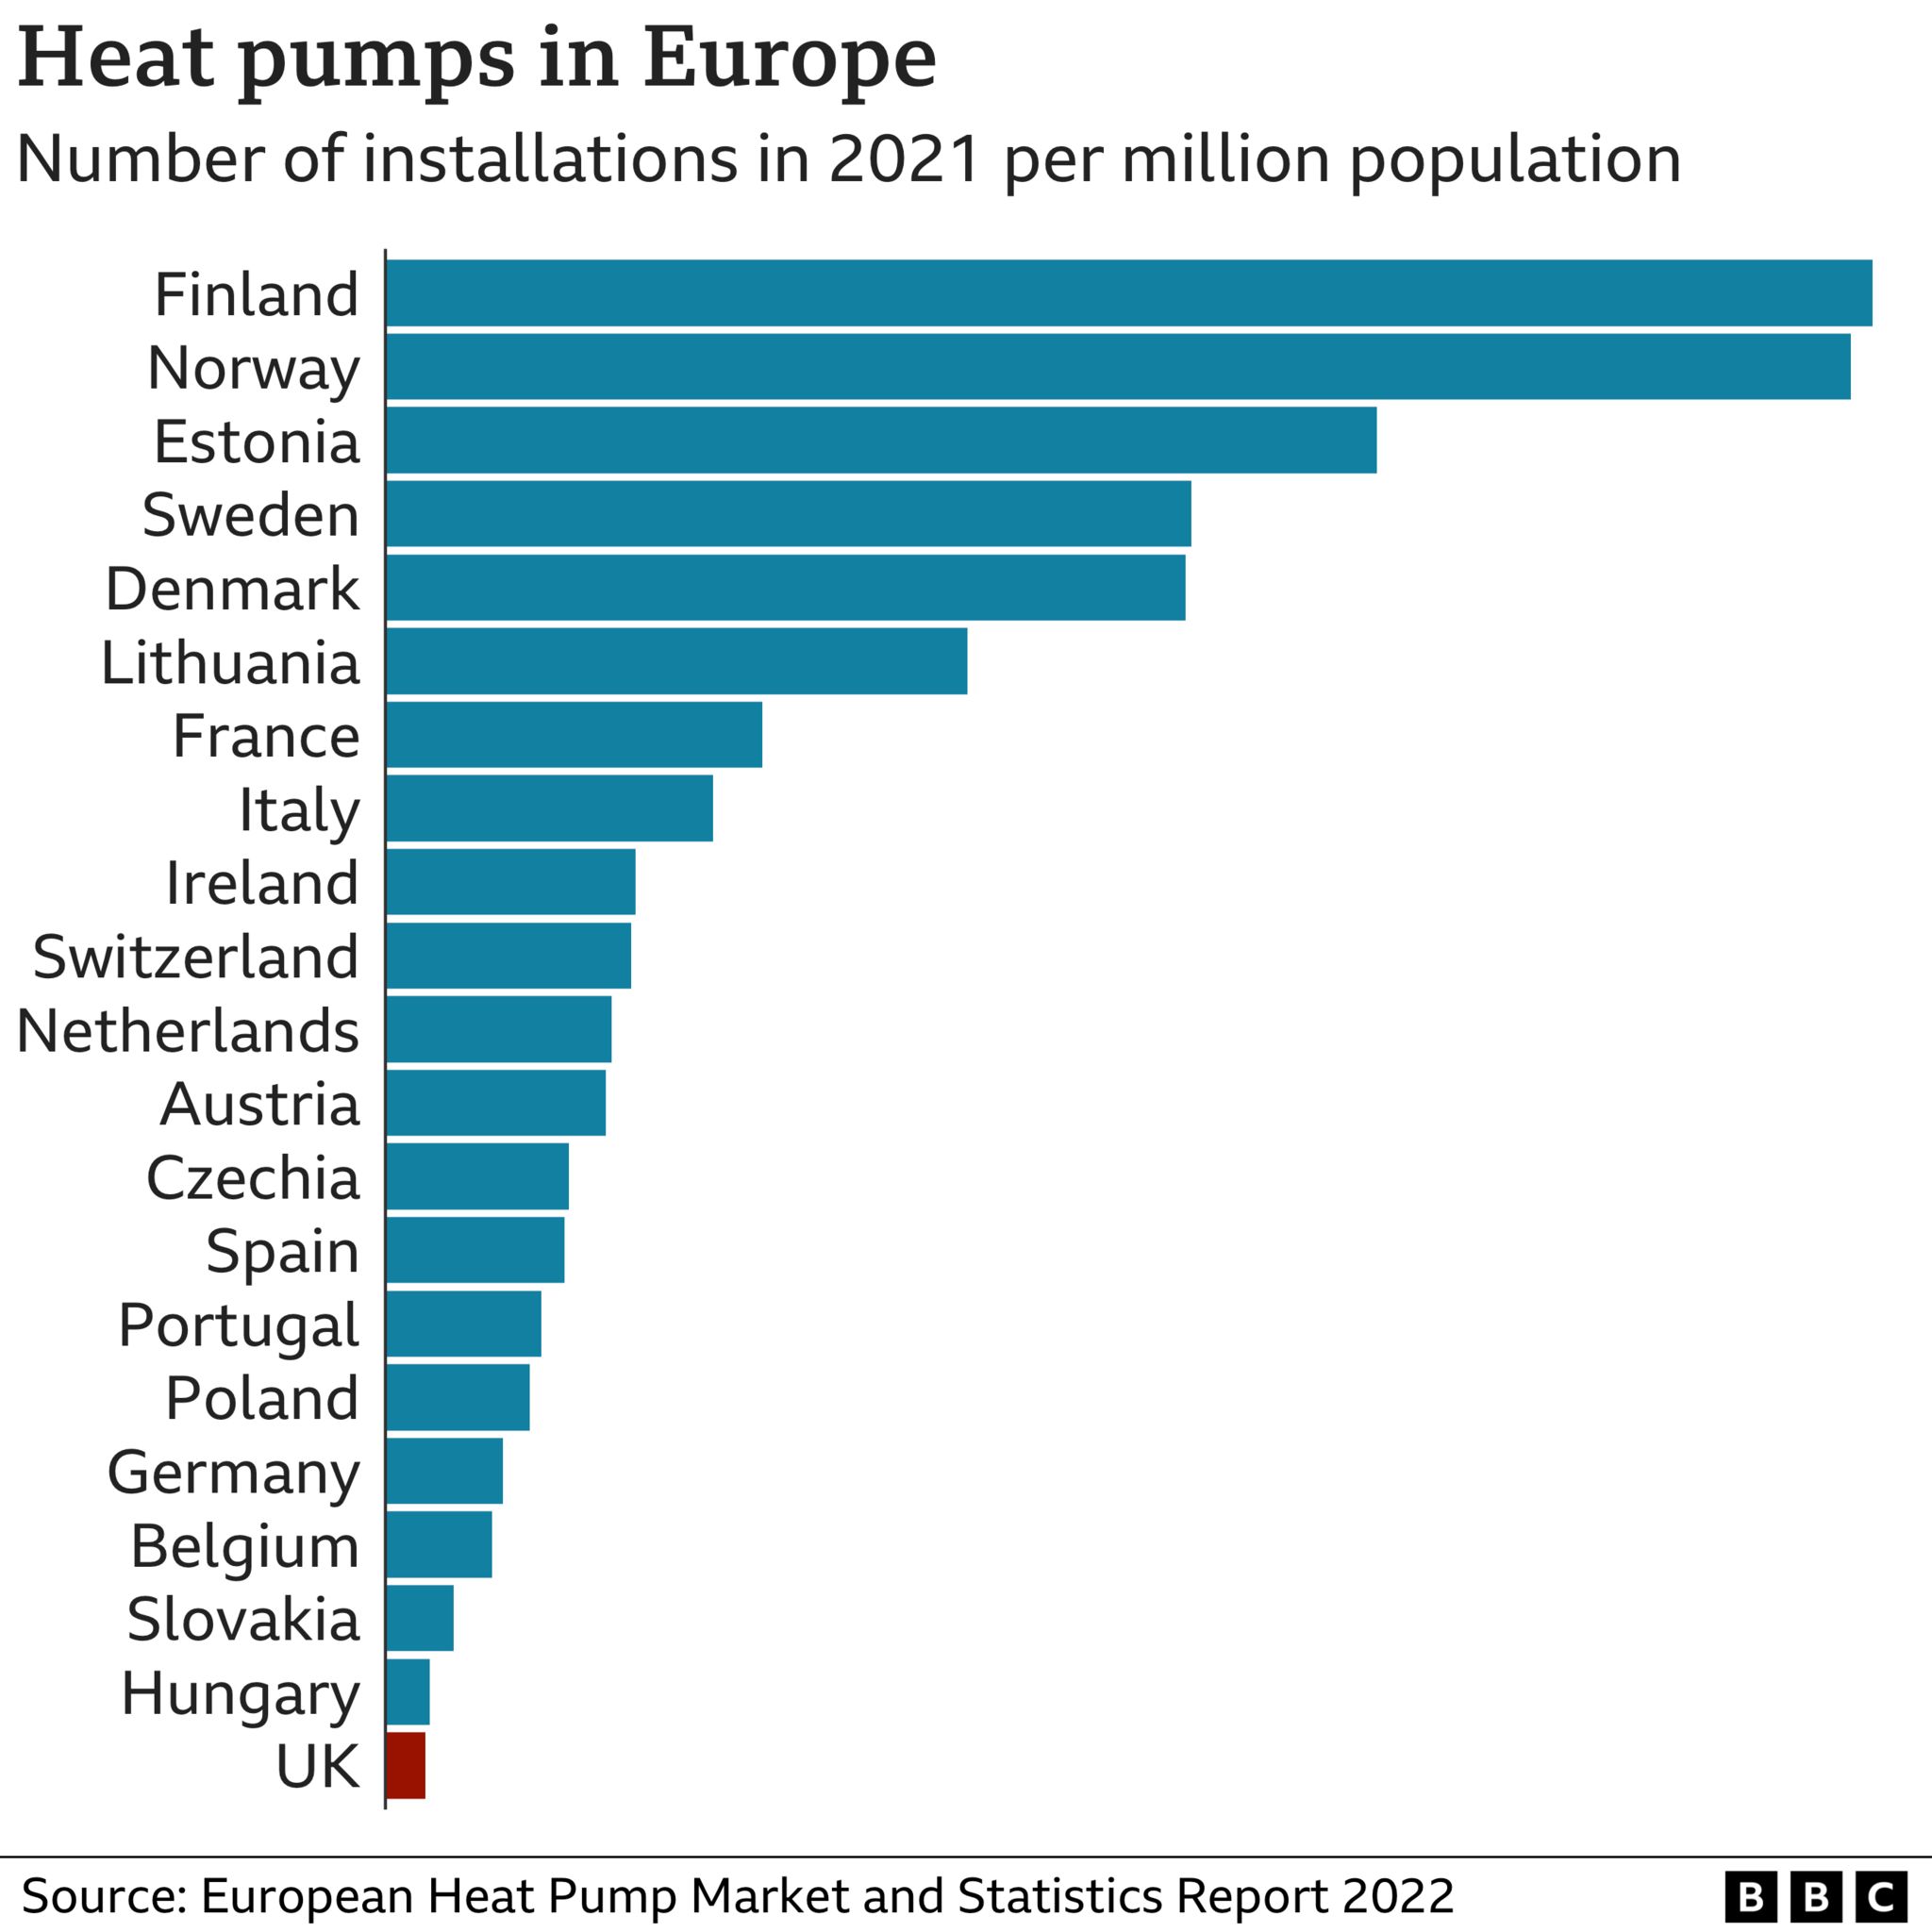 Grafik, die zeigt, dass das Vereinigte Königreich unter den 21 europäischen Ländern den niedrigsten Wert für die Installation von Wärmepumpen pro Million Einwohner aufweist